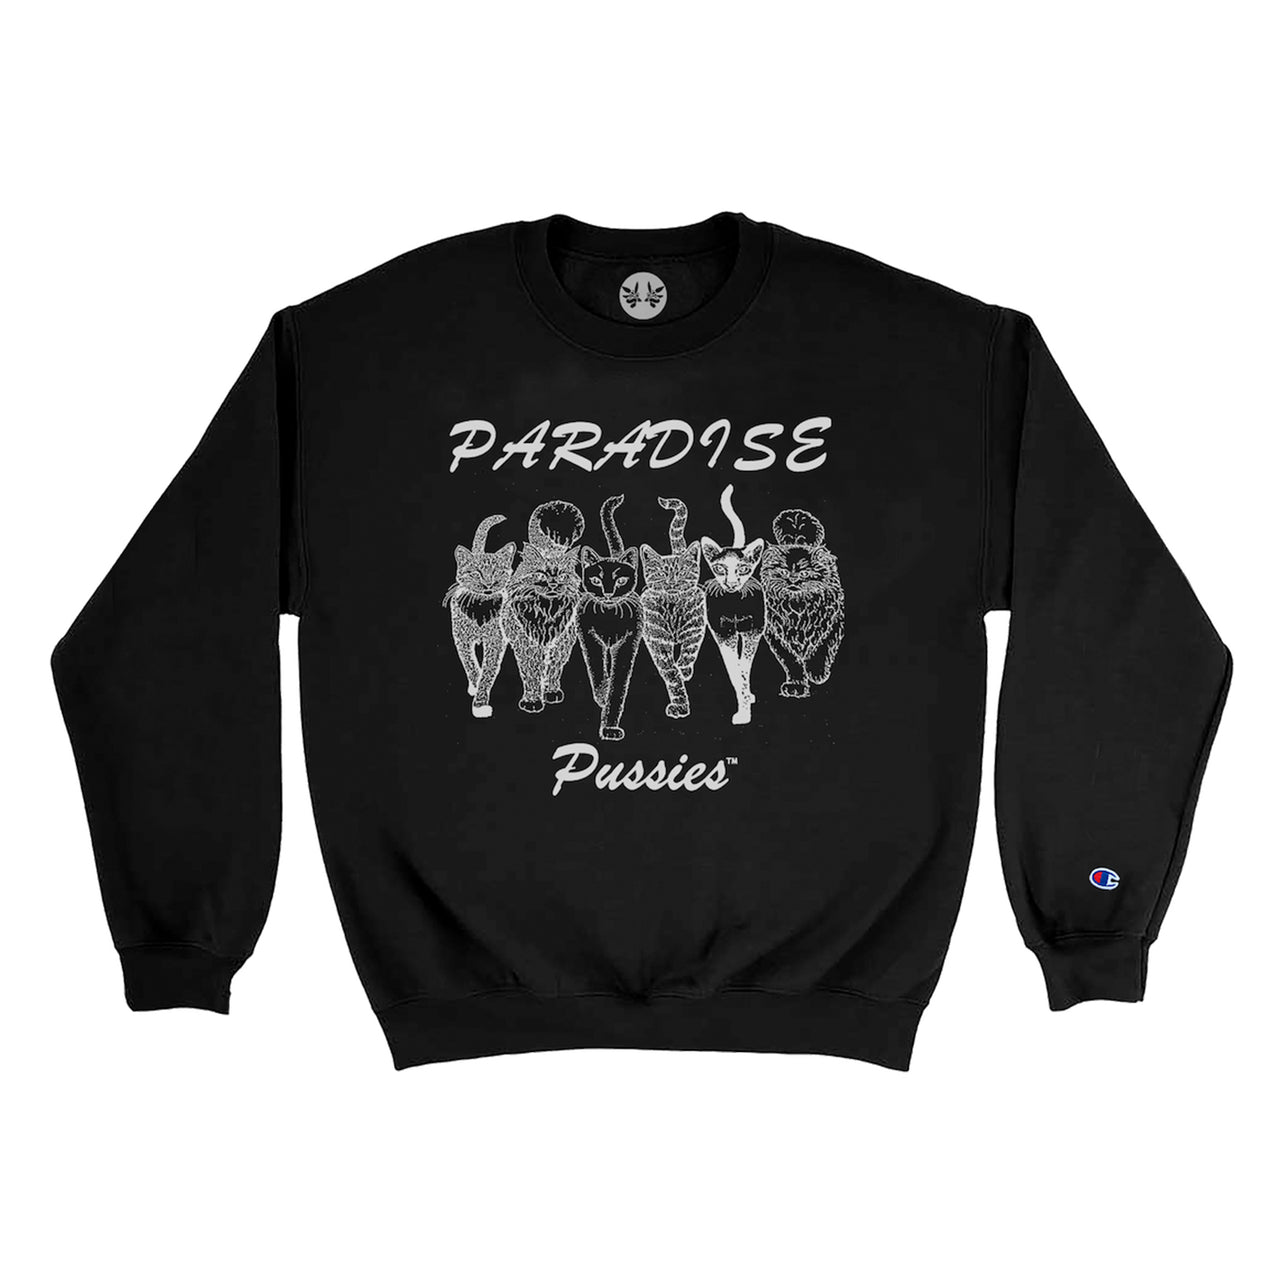 Paradise Pussies Crew - Black